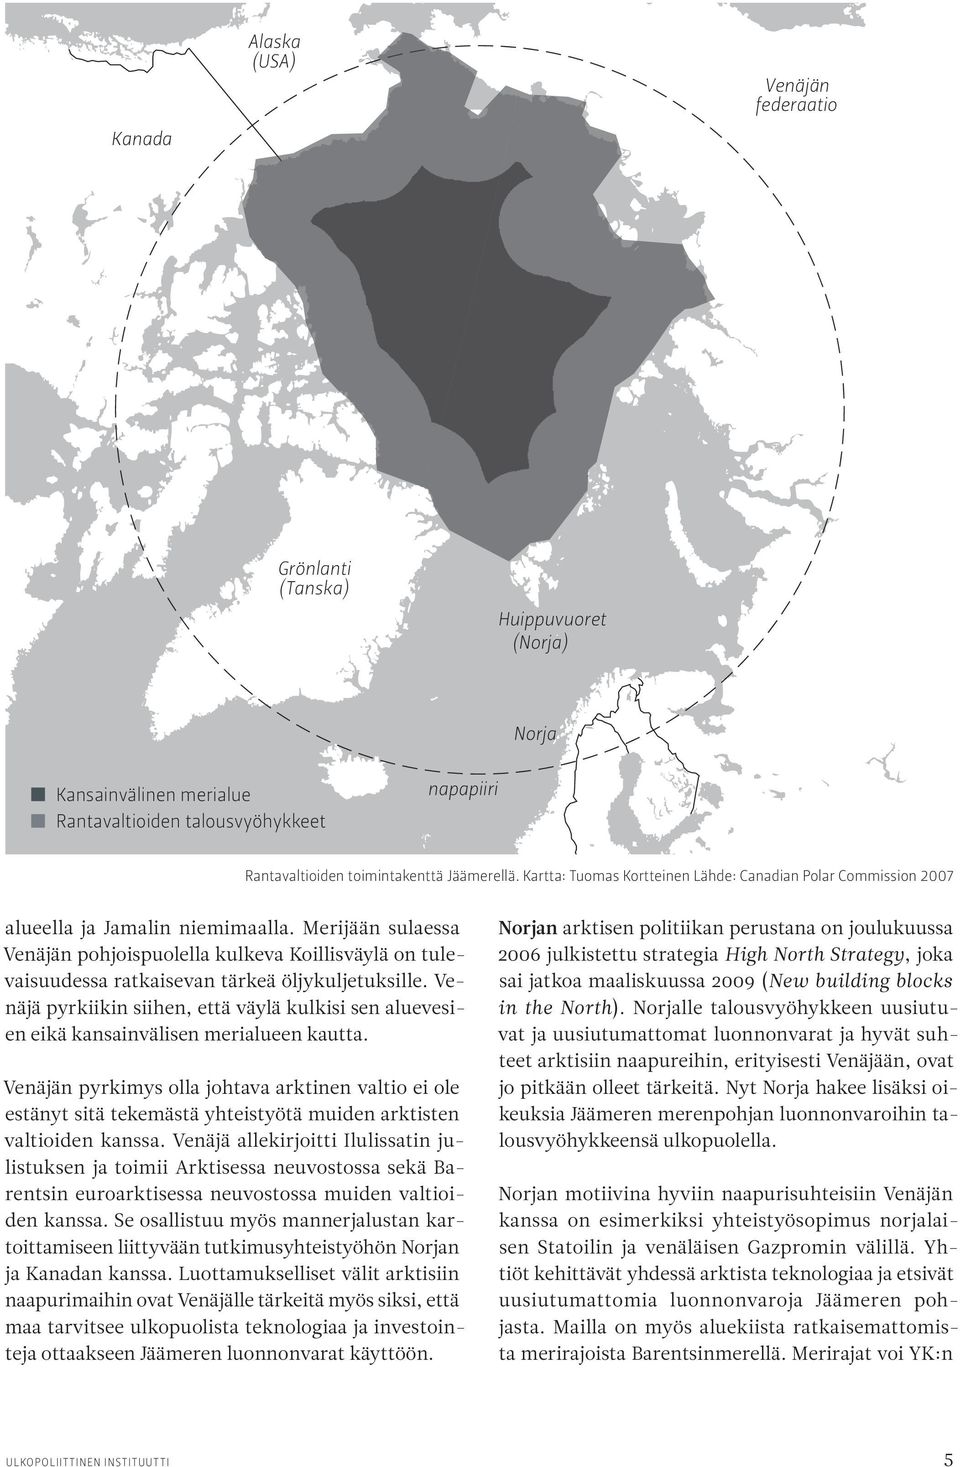 Merijään sulaessa Venäjän pohjoispuolella kulkeva Koillisväylä on tulevaisuudessa ratkaisevan tärkeä öljy kuljetuksille.